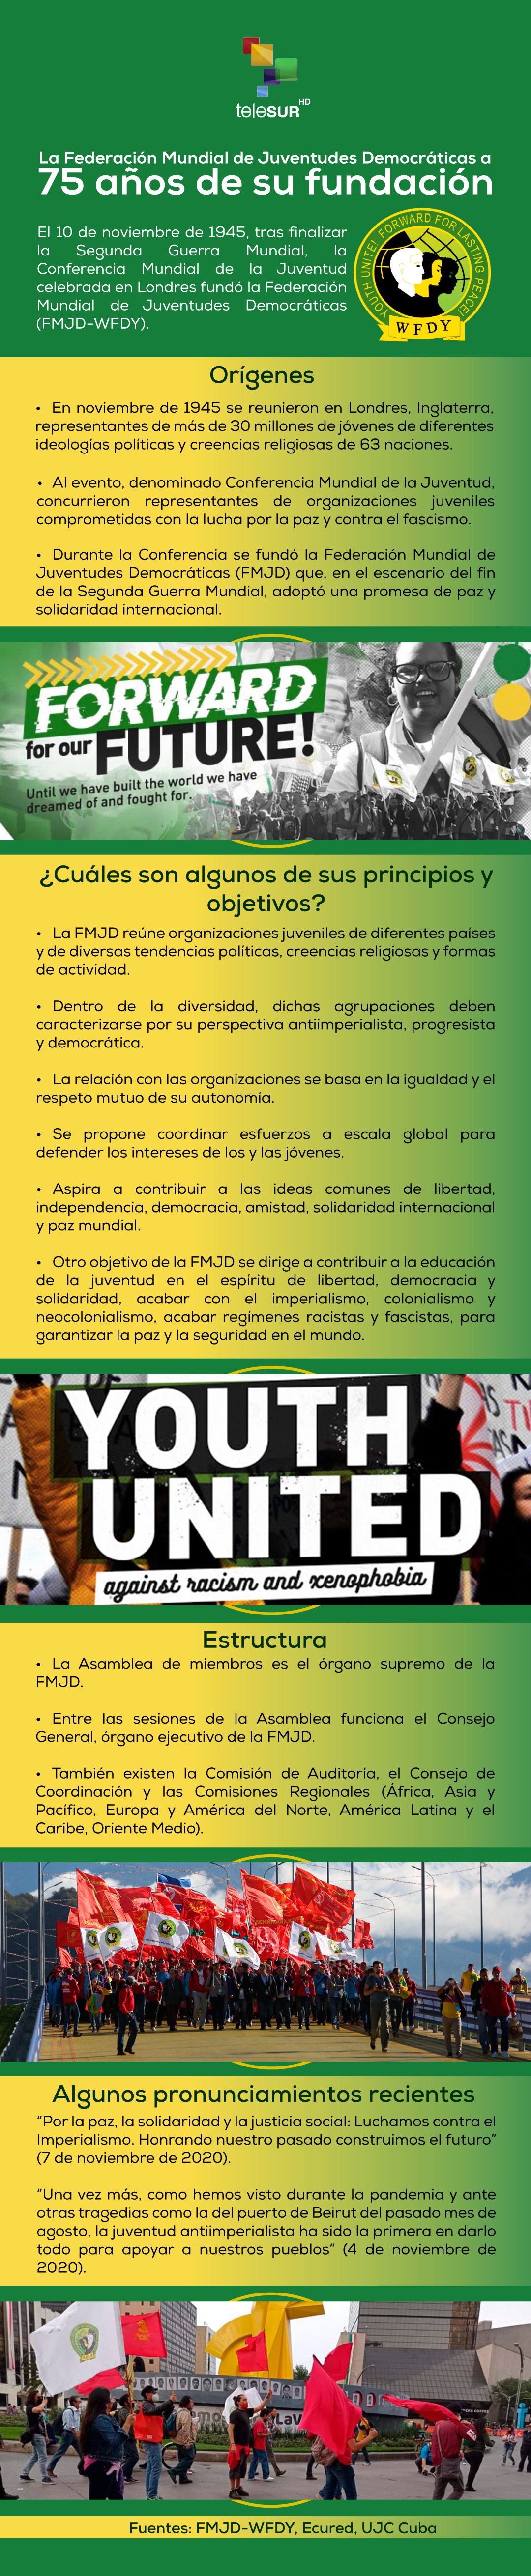 La Federación Mundial de Juventudes Democráticas a 75 años de su fundación